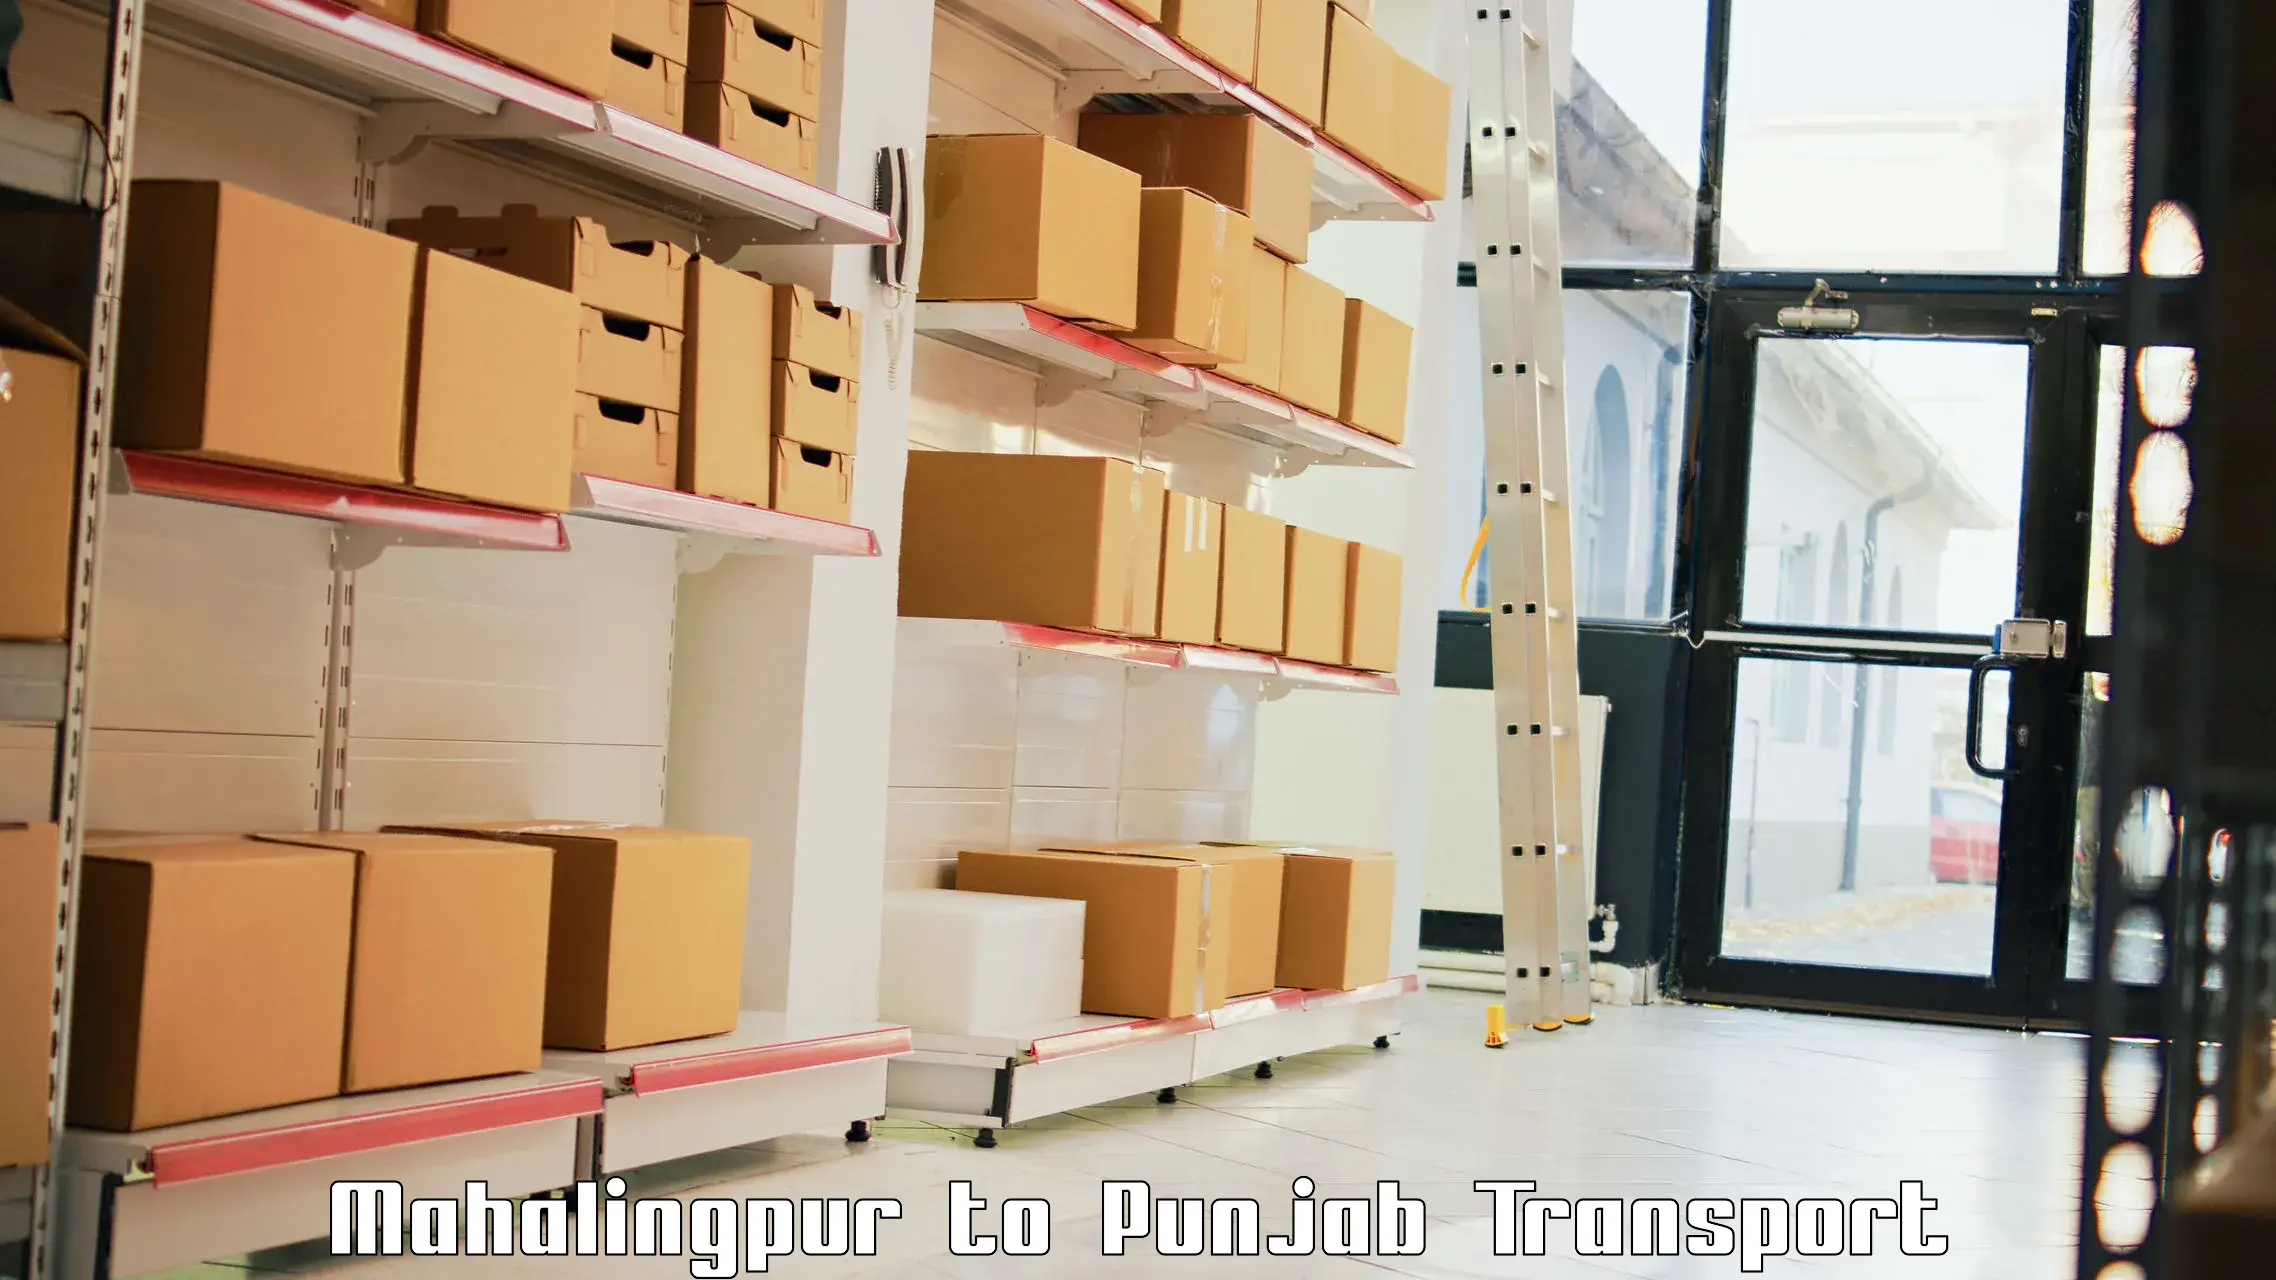 Lorry transport service Mahalingpur to Nakodar